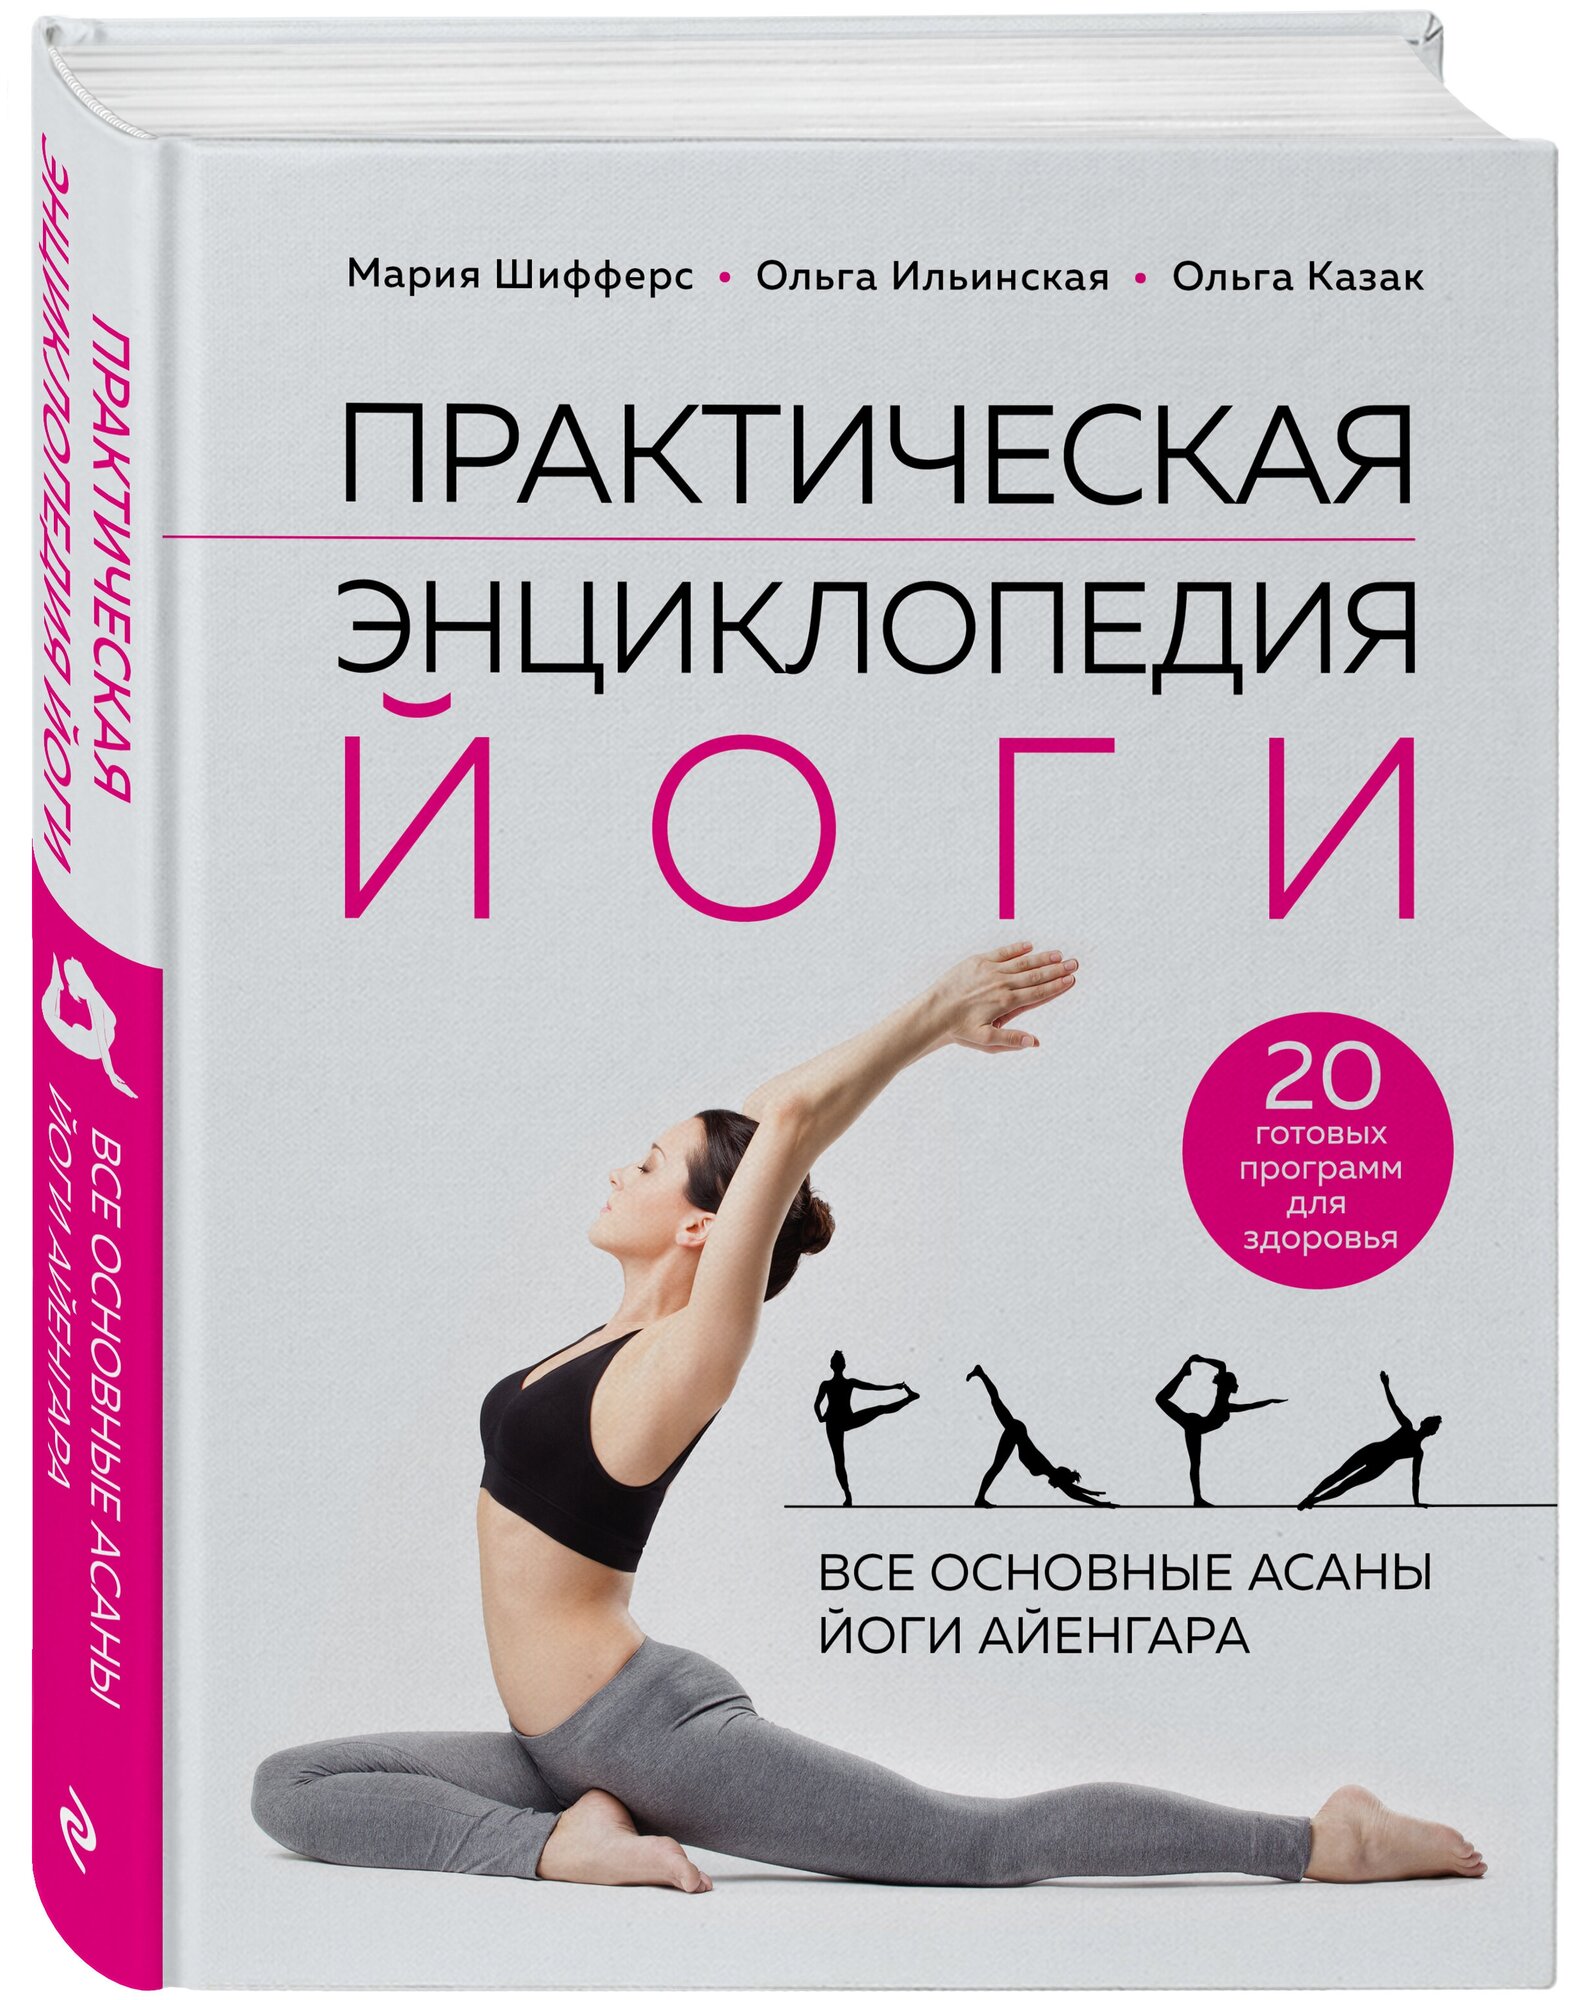 Практическая энциклопедия йоги - фото №1